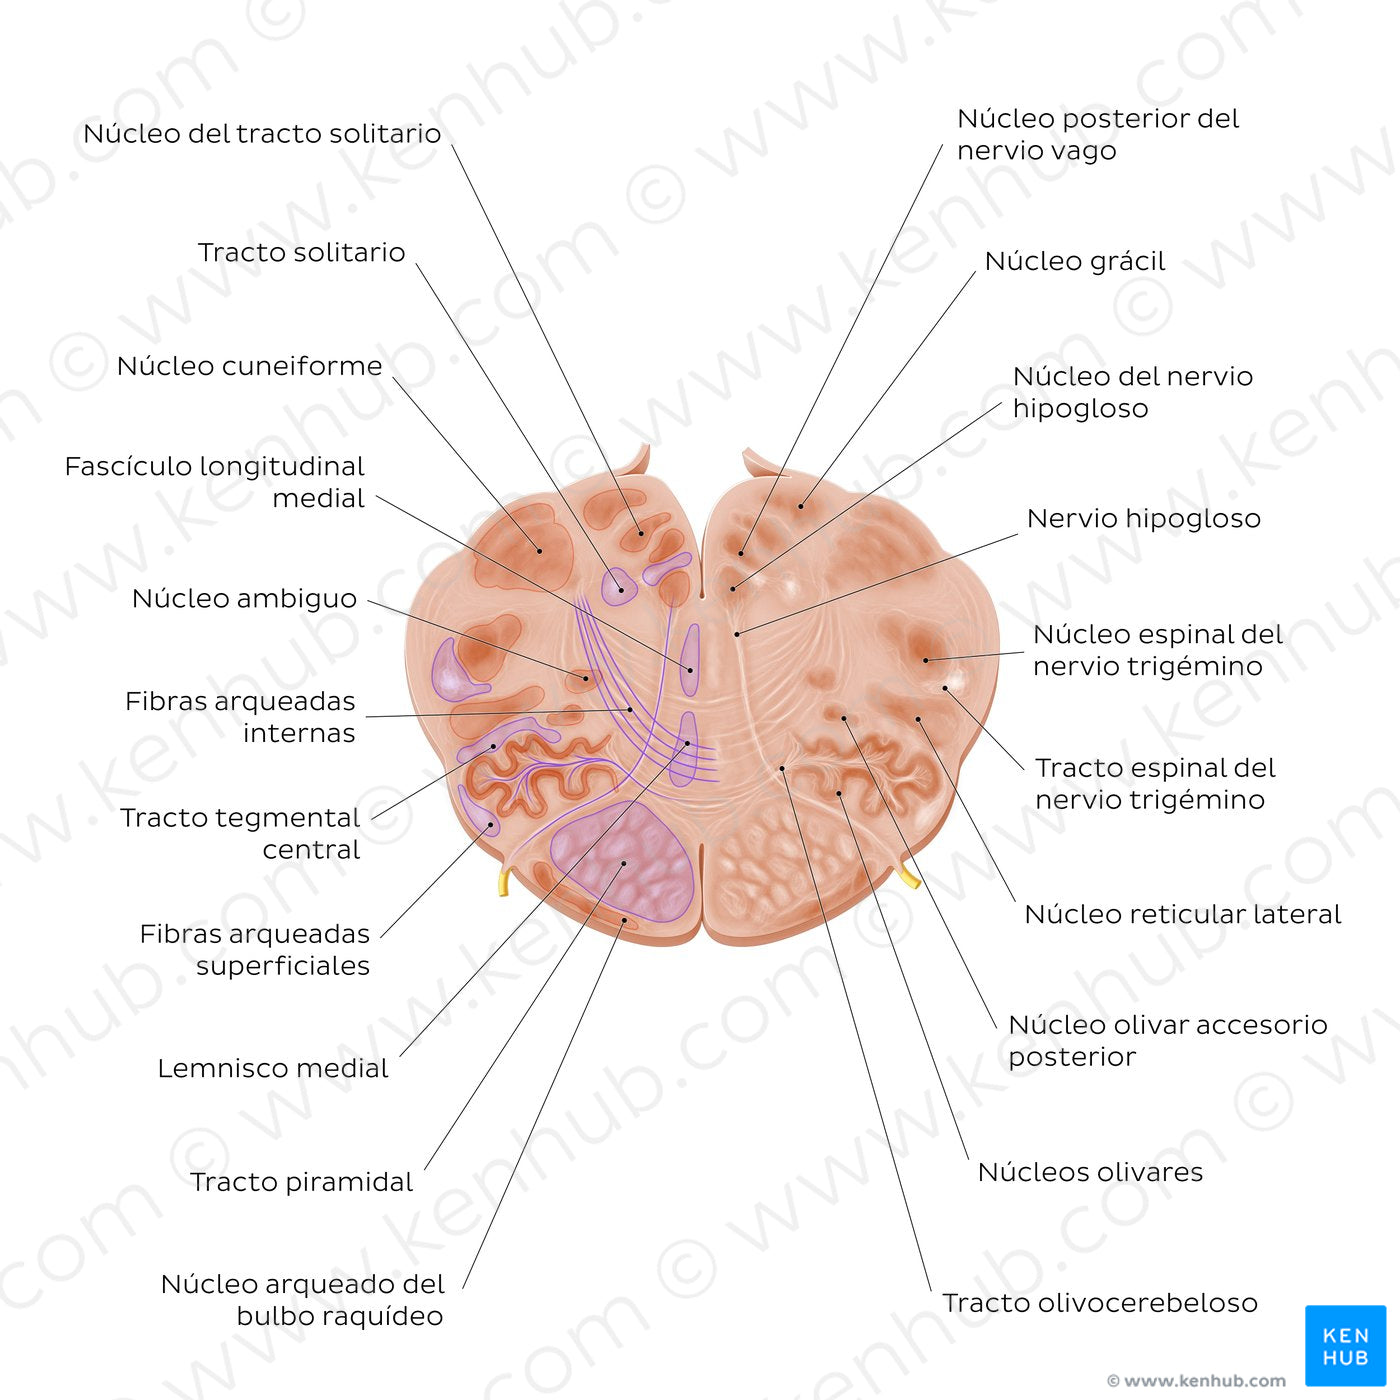 Medulla oblongata: Hypoglossal nerve level (Spanish)